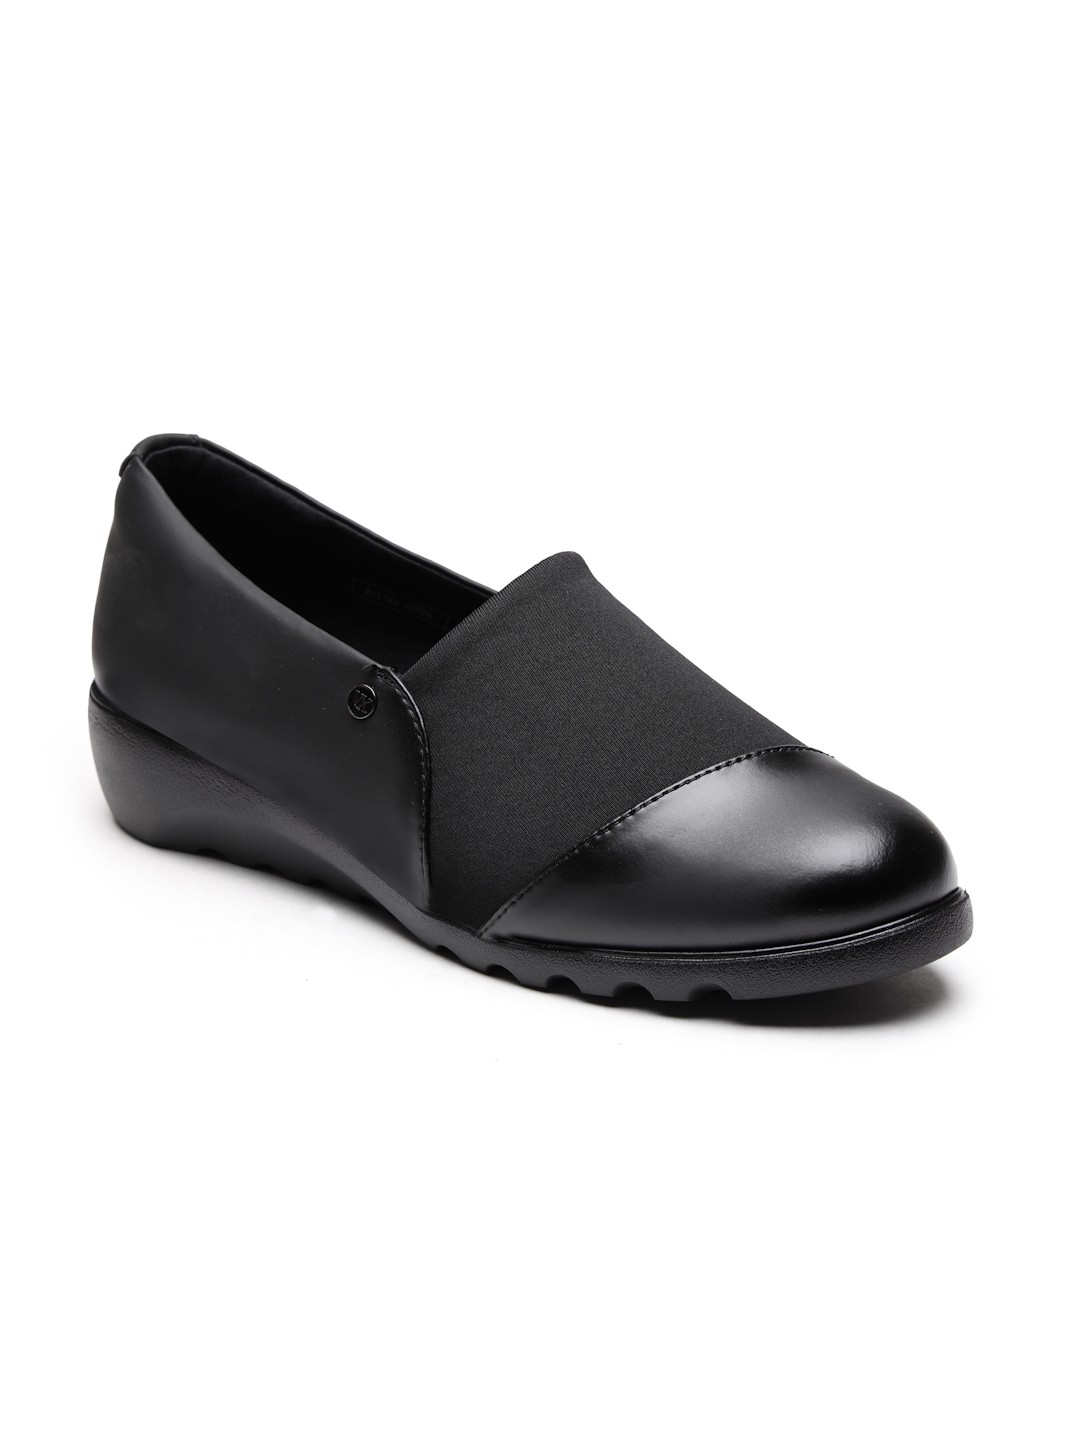 Buy Von Wellx Germany Comfort Women's Black Casual Shoes Ayla Online in Sohar